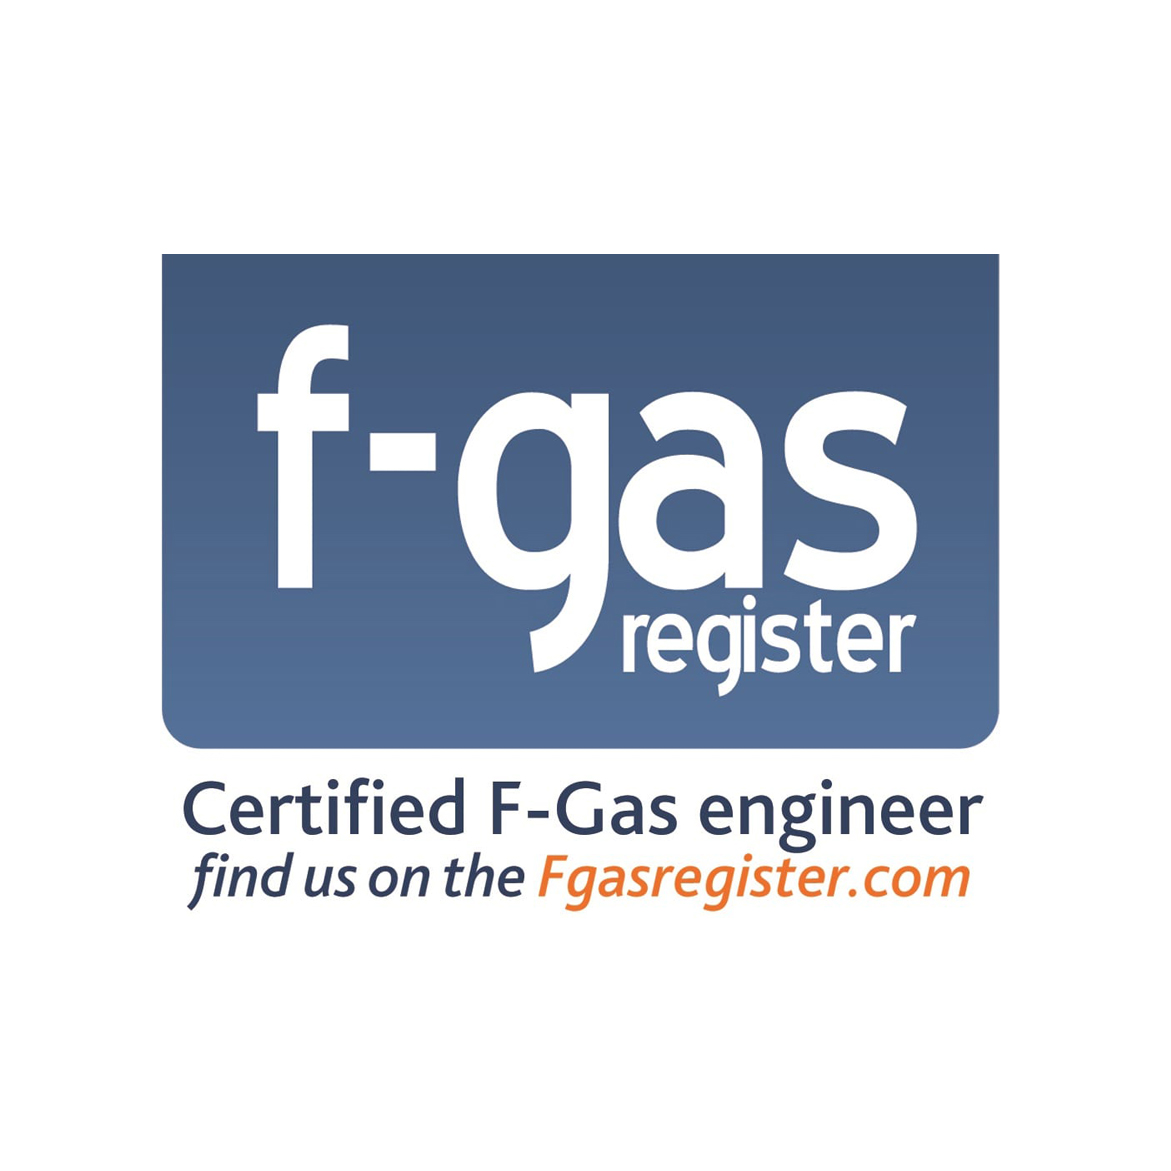 f-gas-sticker-resized